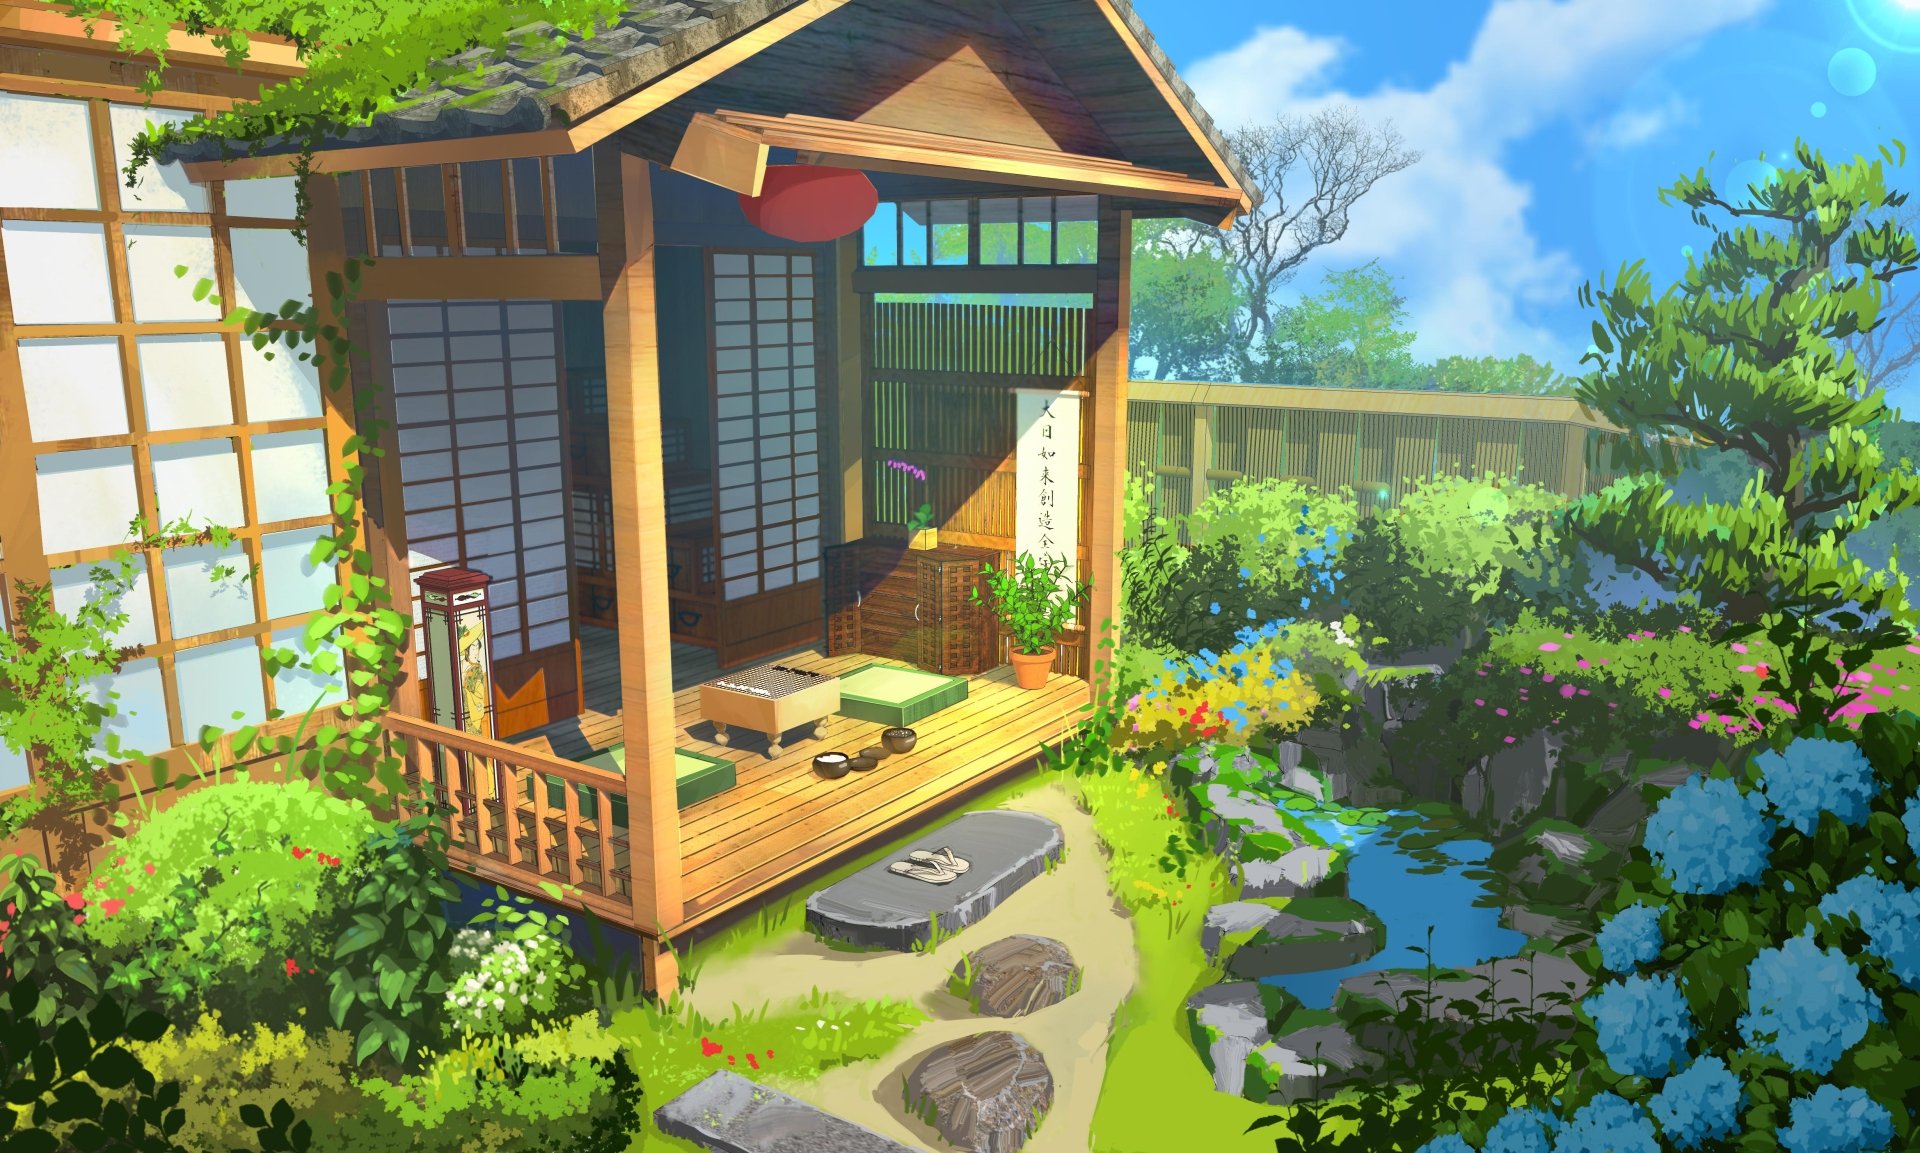 Studio Ghibli Garden Scenery Wallpapers - Top Hình Ảnh Đẹp